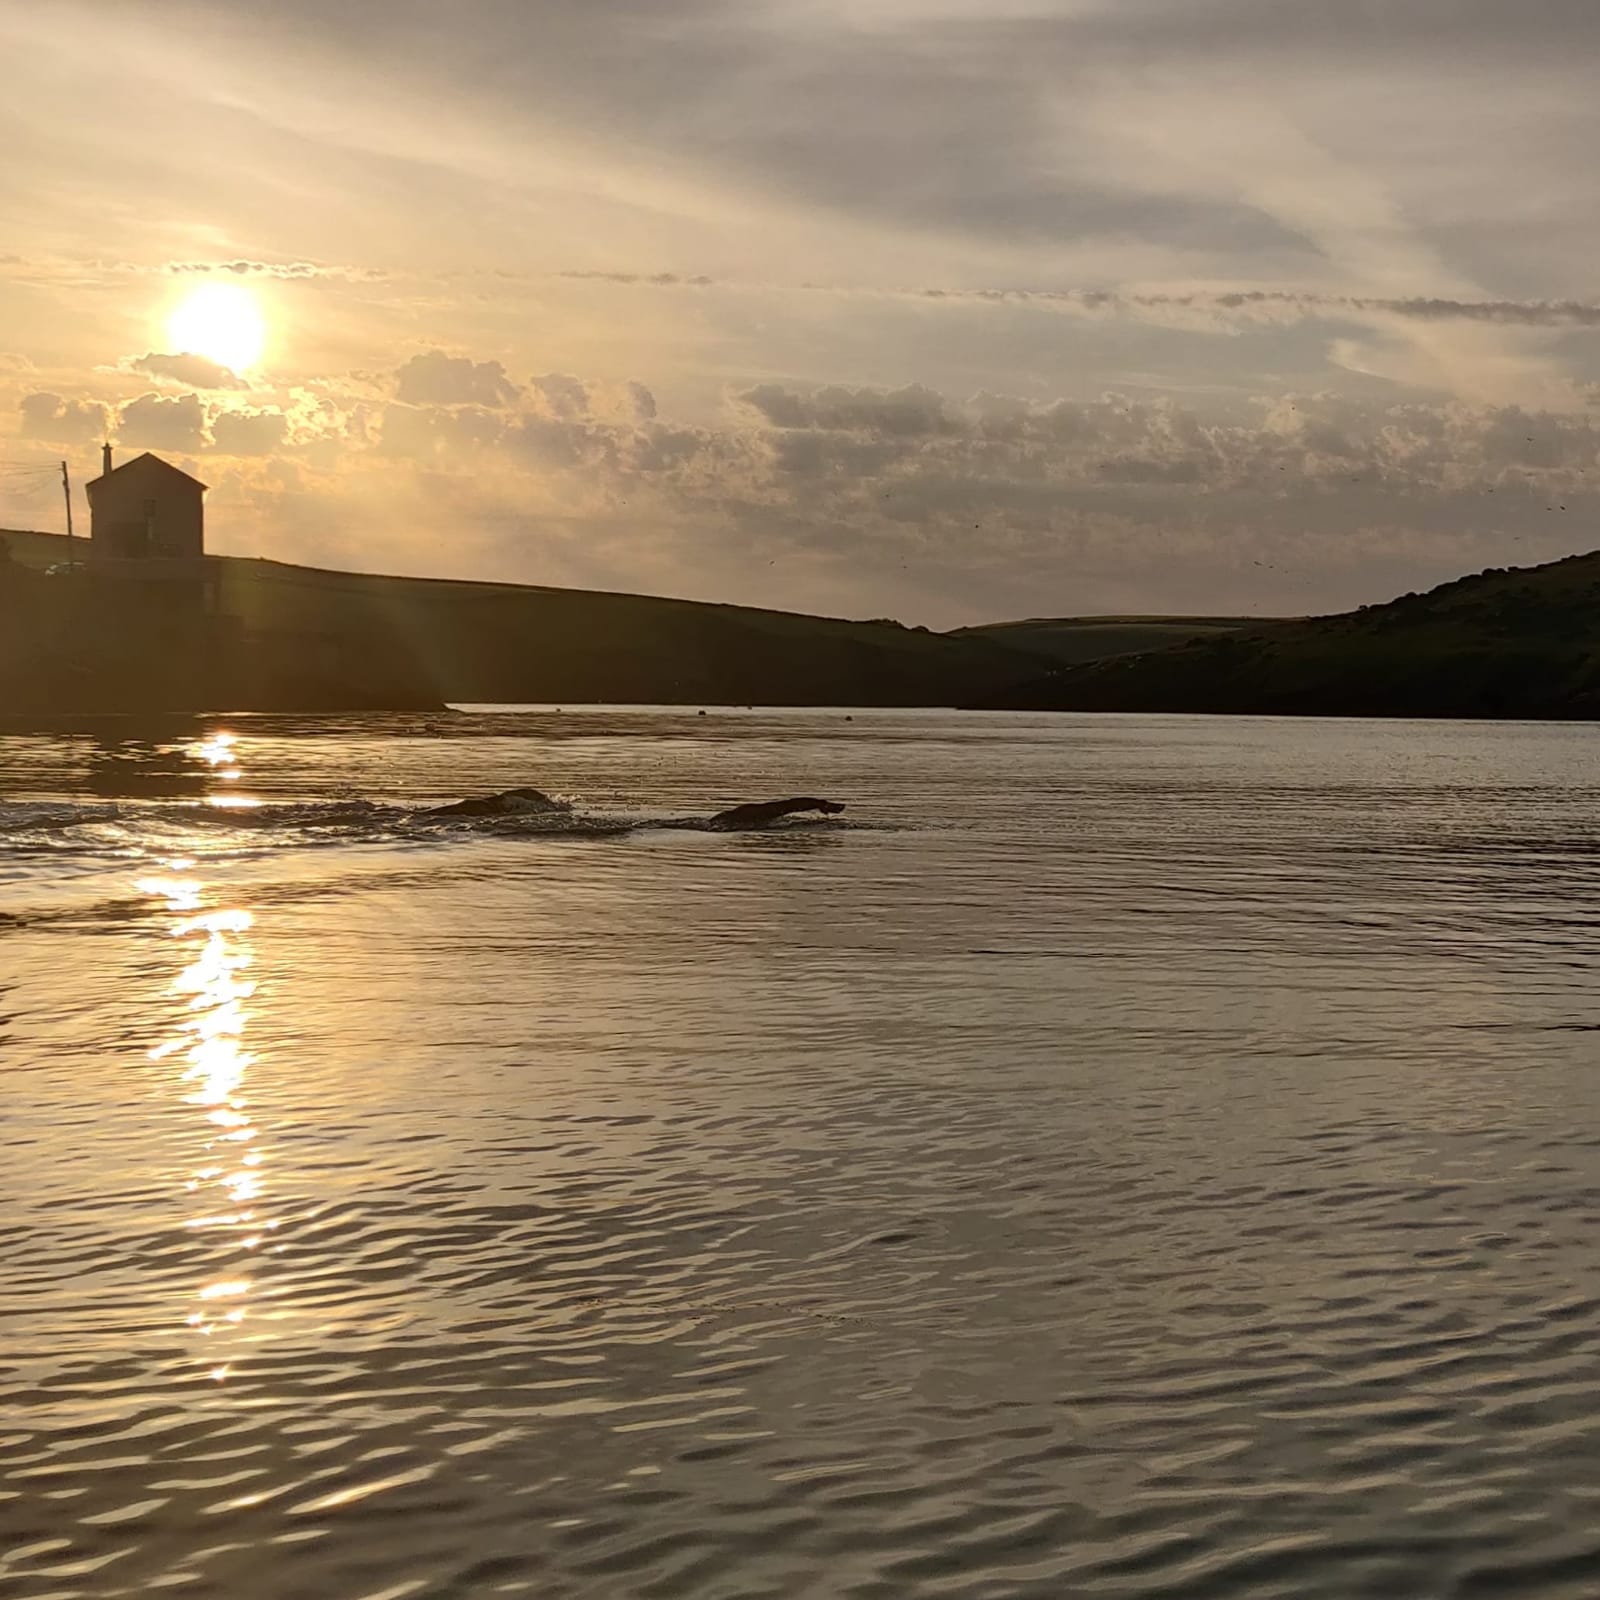 Summer dawn at Sandycove Island. Photo by Eoin O'Riordan